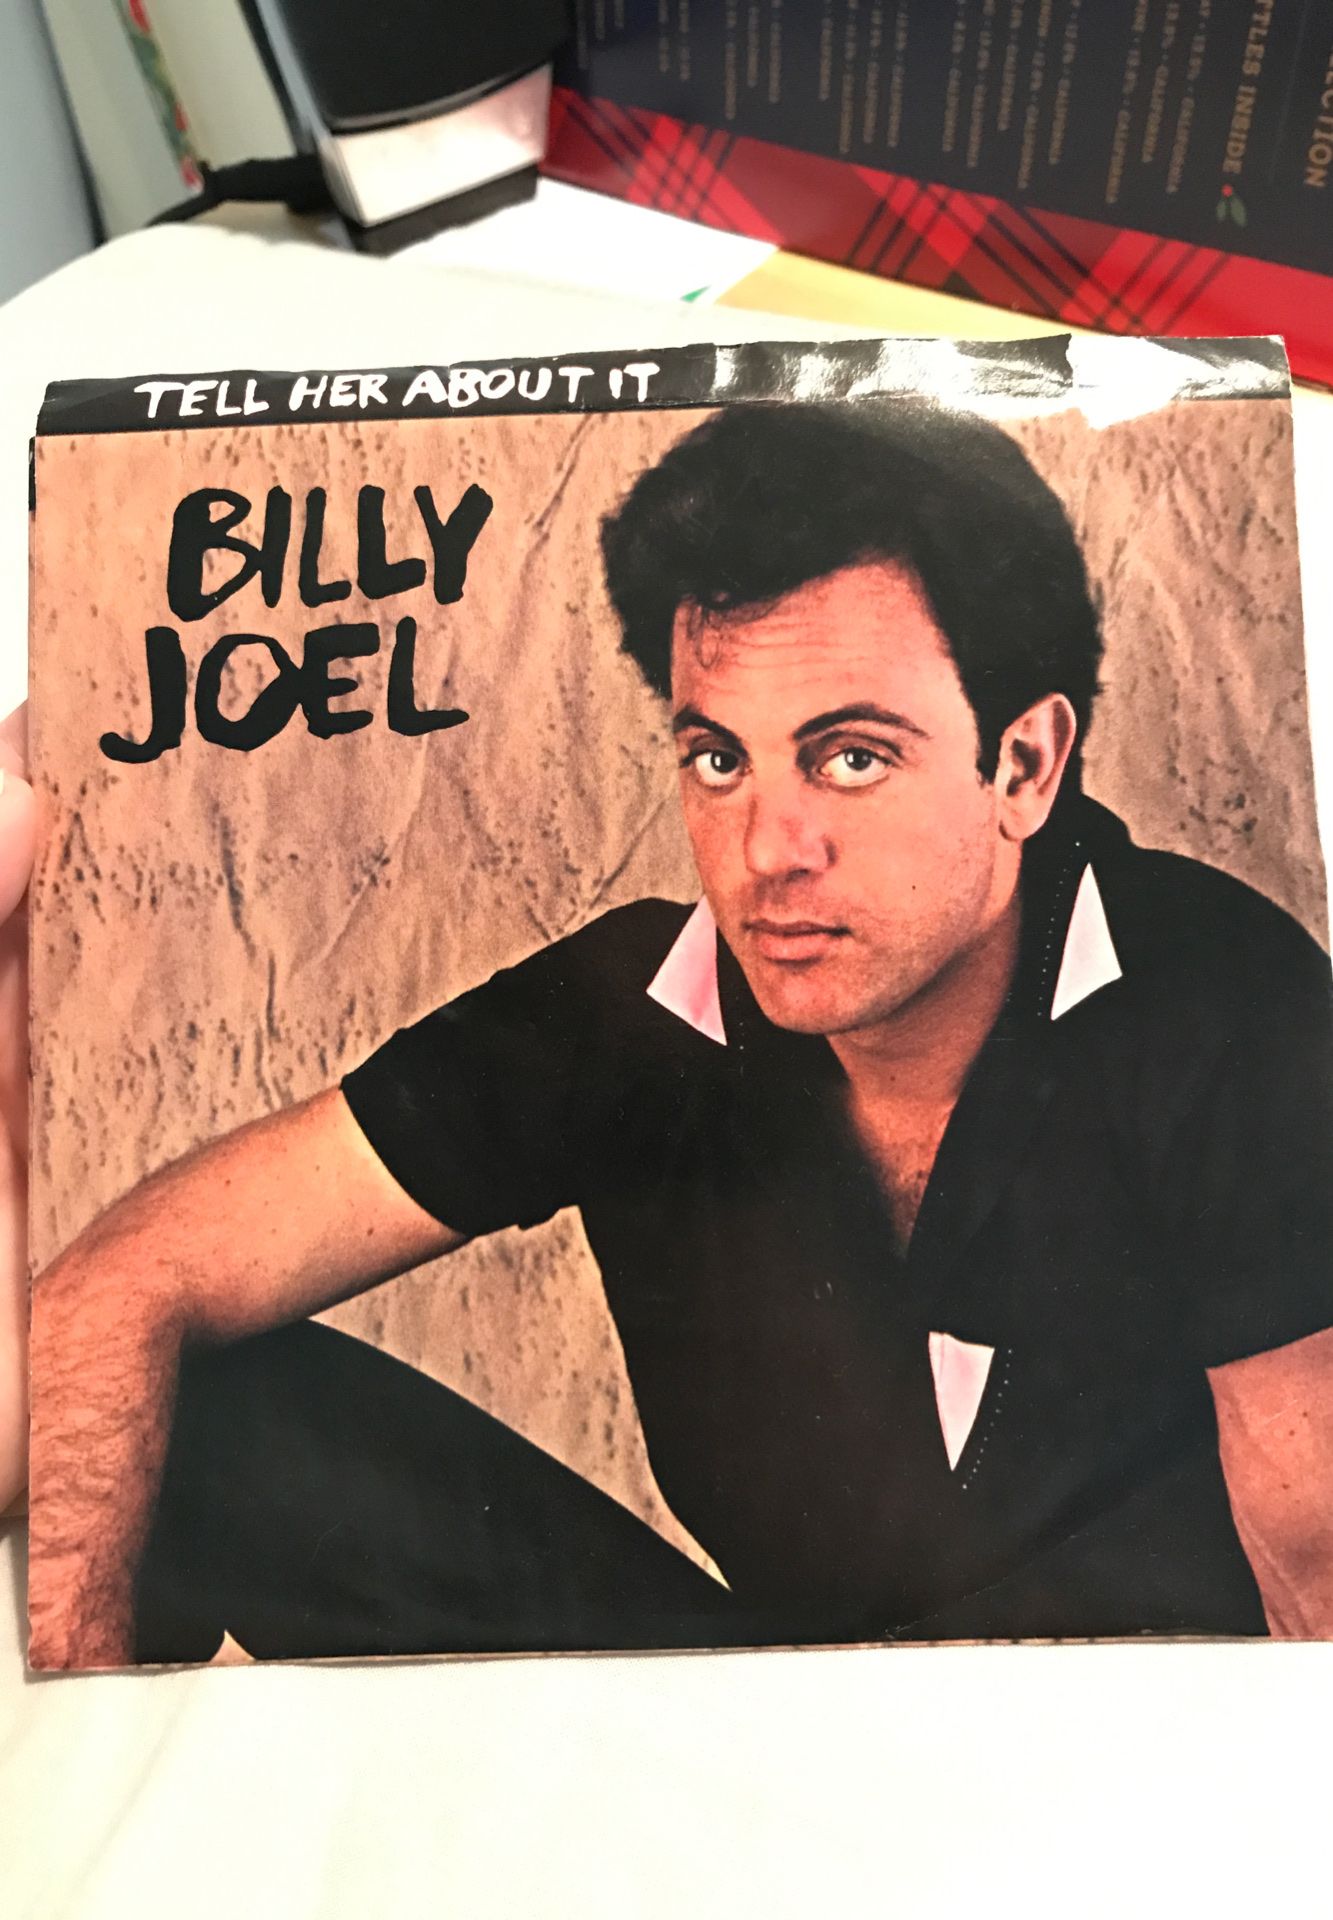 Billy Joel 45s